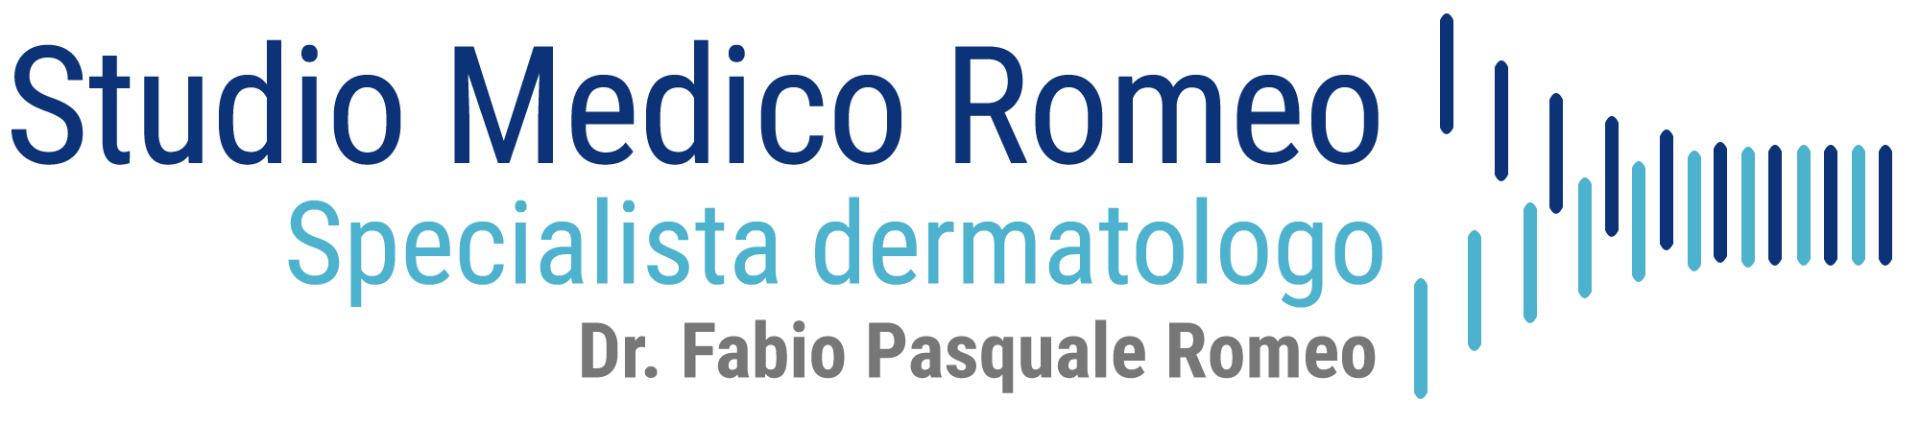 STUDIO DI DERMATOLOGIA ROMEO - LOGO